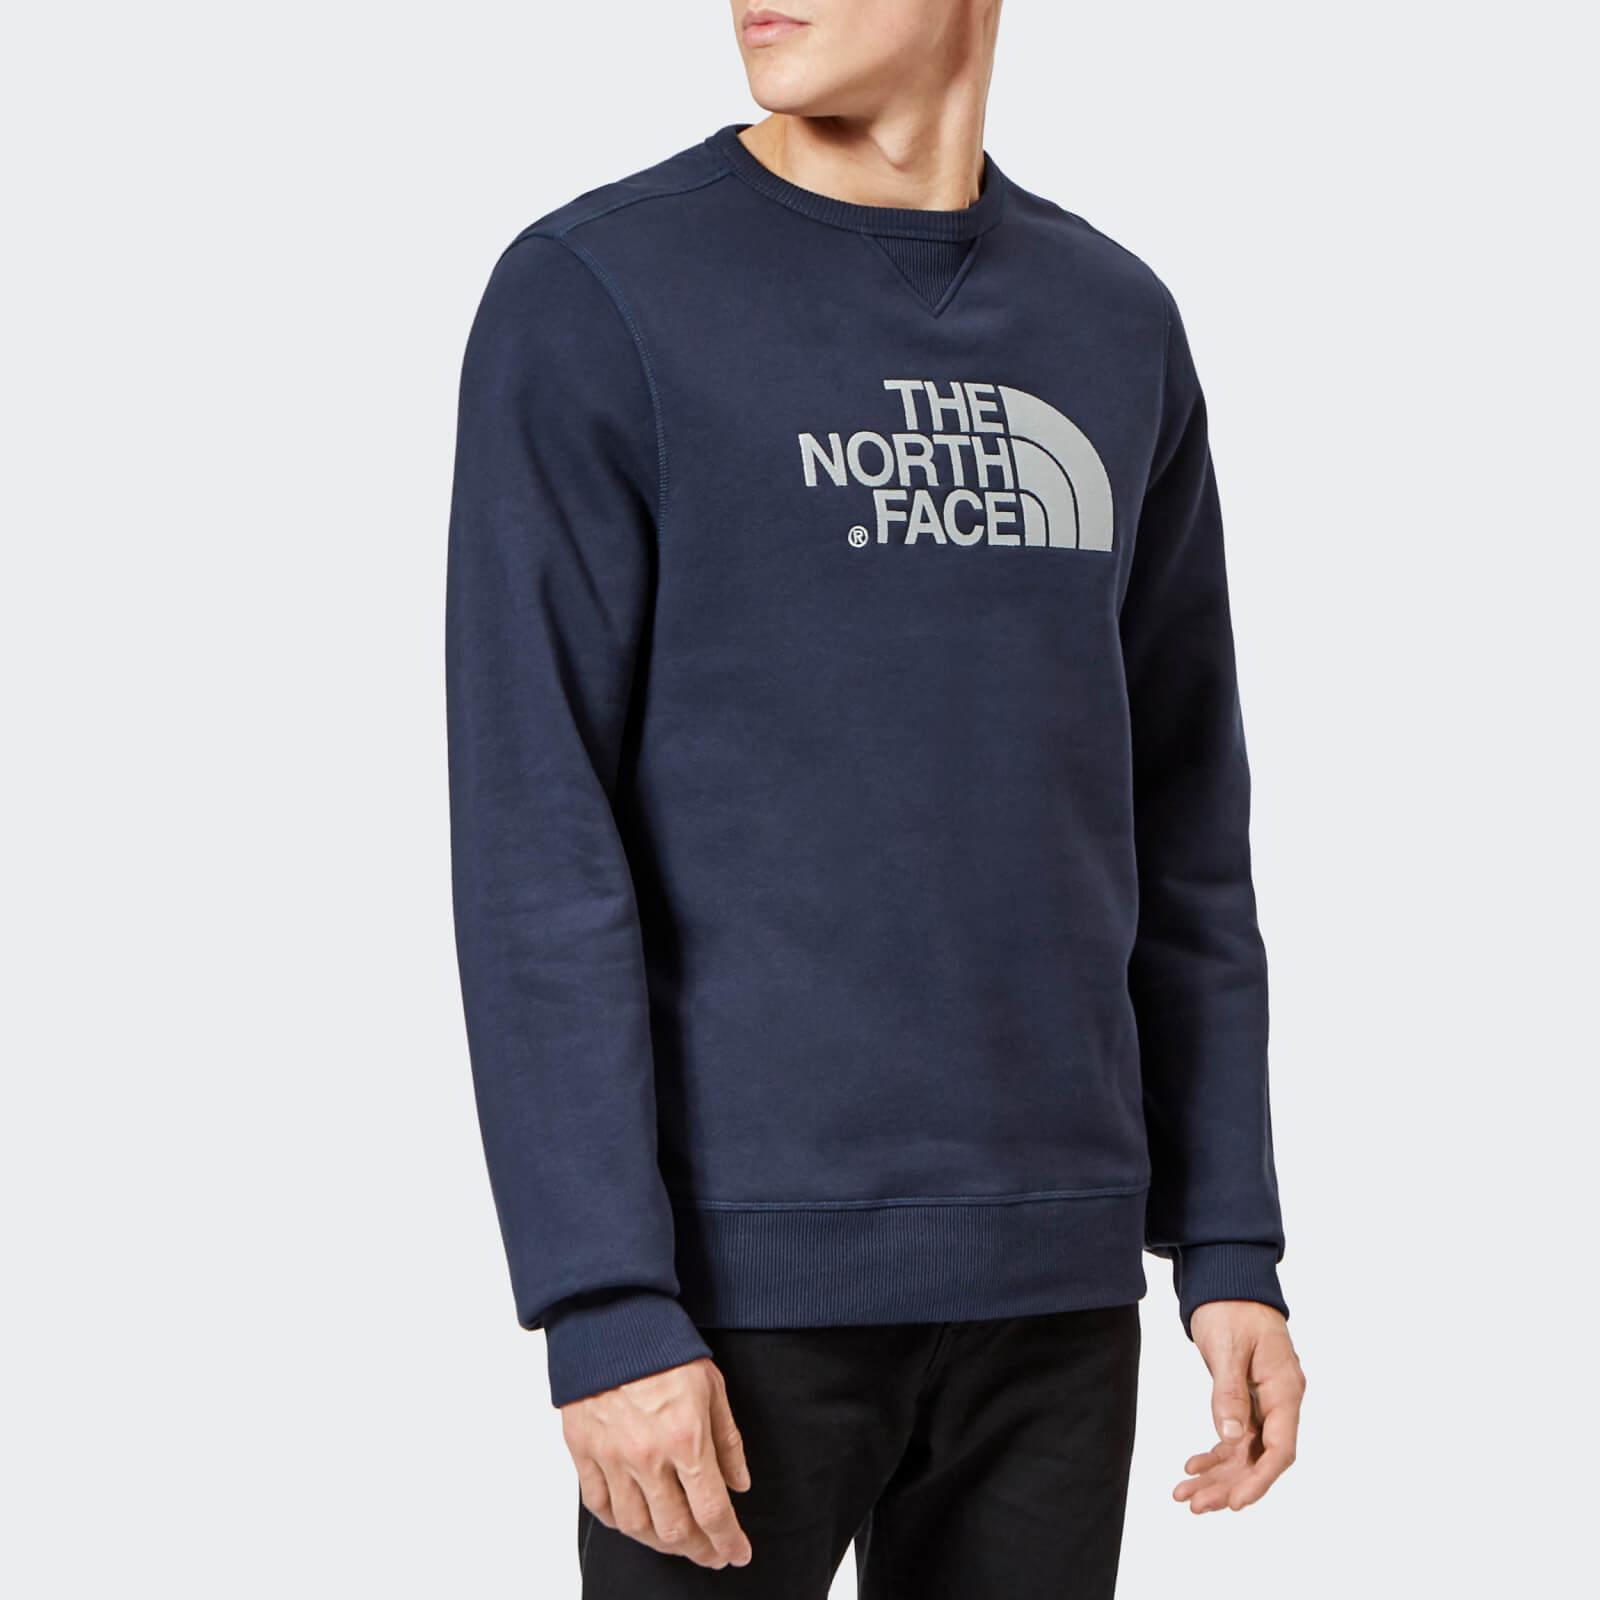 north face women's crew neck sweatshirt